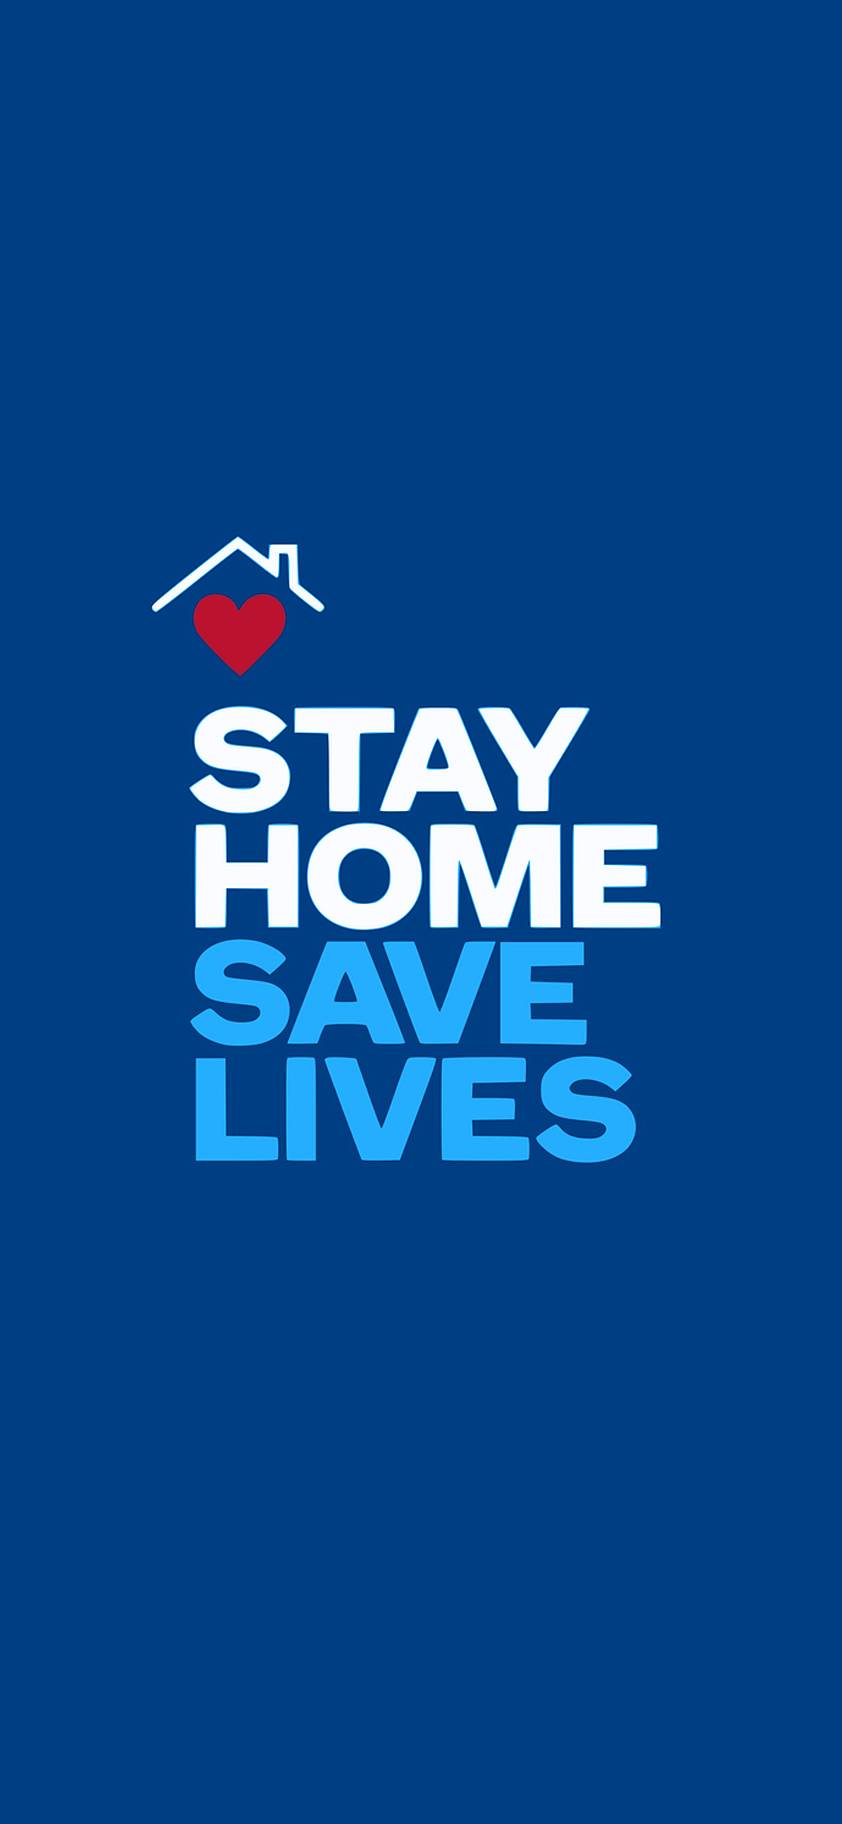 Stay_home_safe-6719035b-b146-4475-a05d-aac97a5e9597.jpg